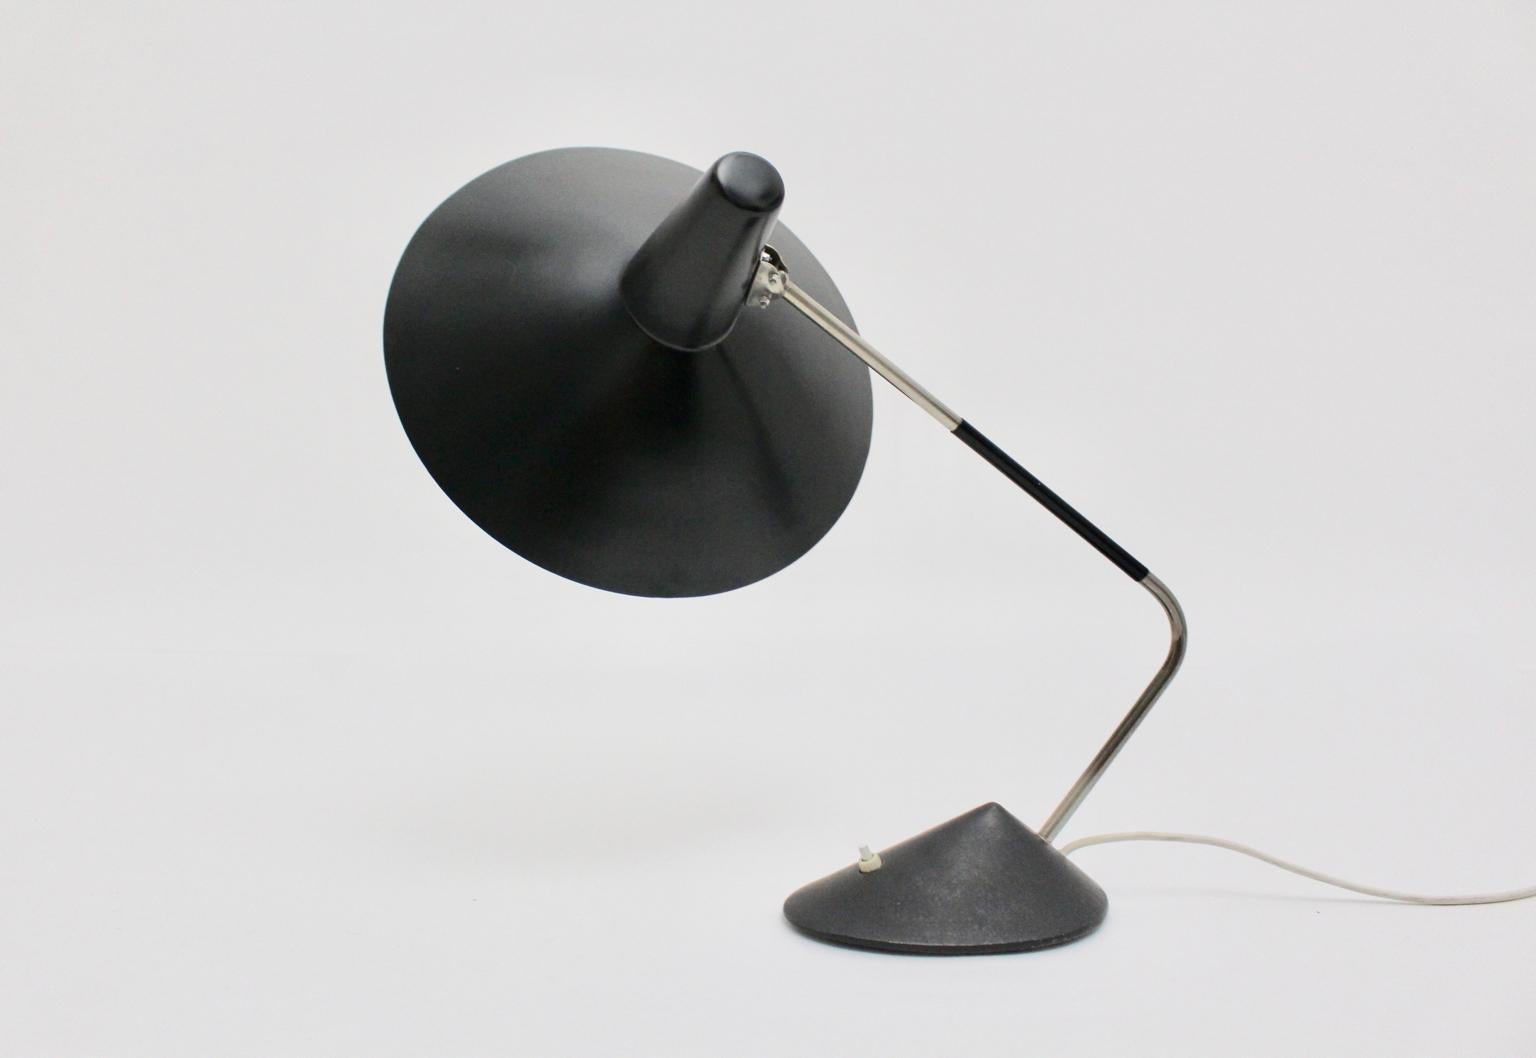 Mid Century Modern  Vintage-Tischlampe von Stilnovo aus schwarzem und vernickeltem Metall.
Eine bezaubernde Tisch- oder Schreibtischlampe aus den 1950er Jahren von Stilnovo mit einer wunderbaren Form und Stil.
Der runde Lampenschirm erinnert an